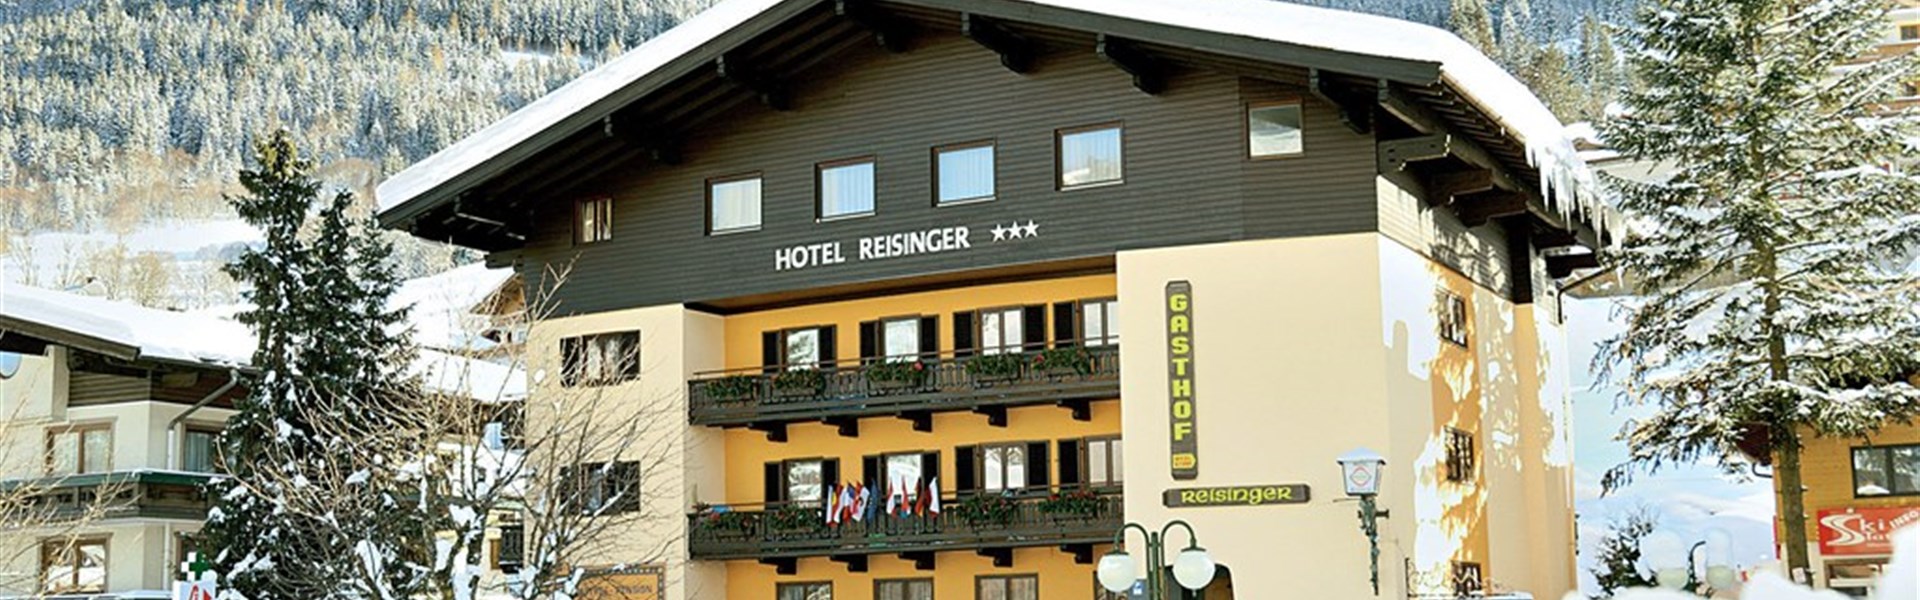 Hotel Reisinger (W) - 